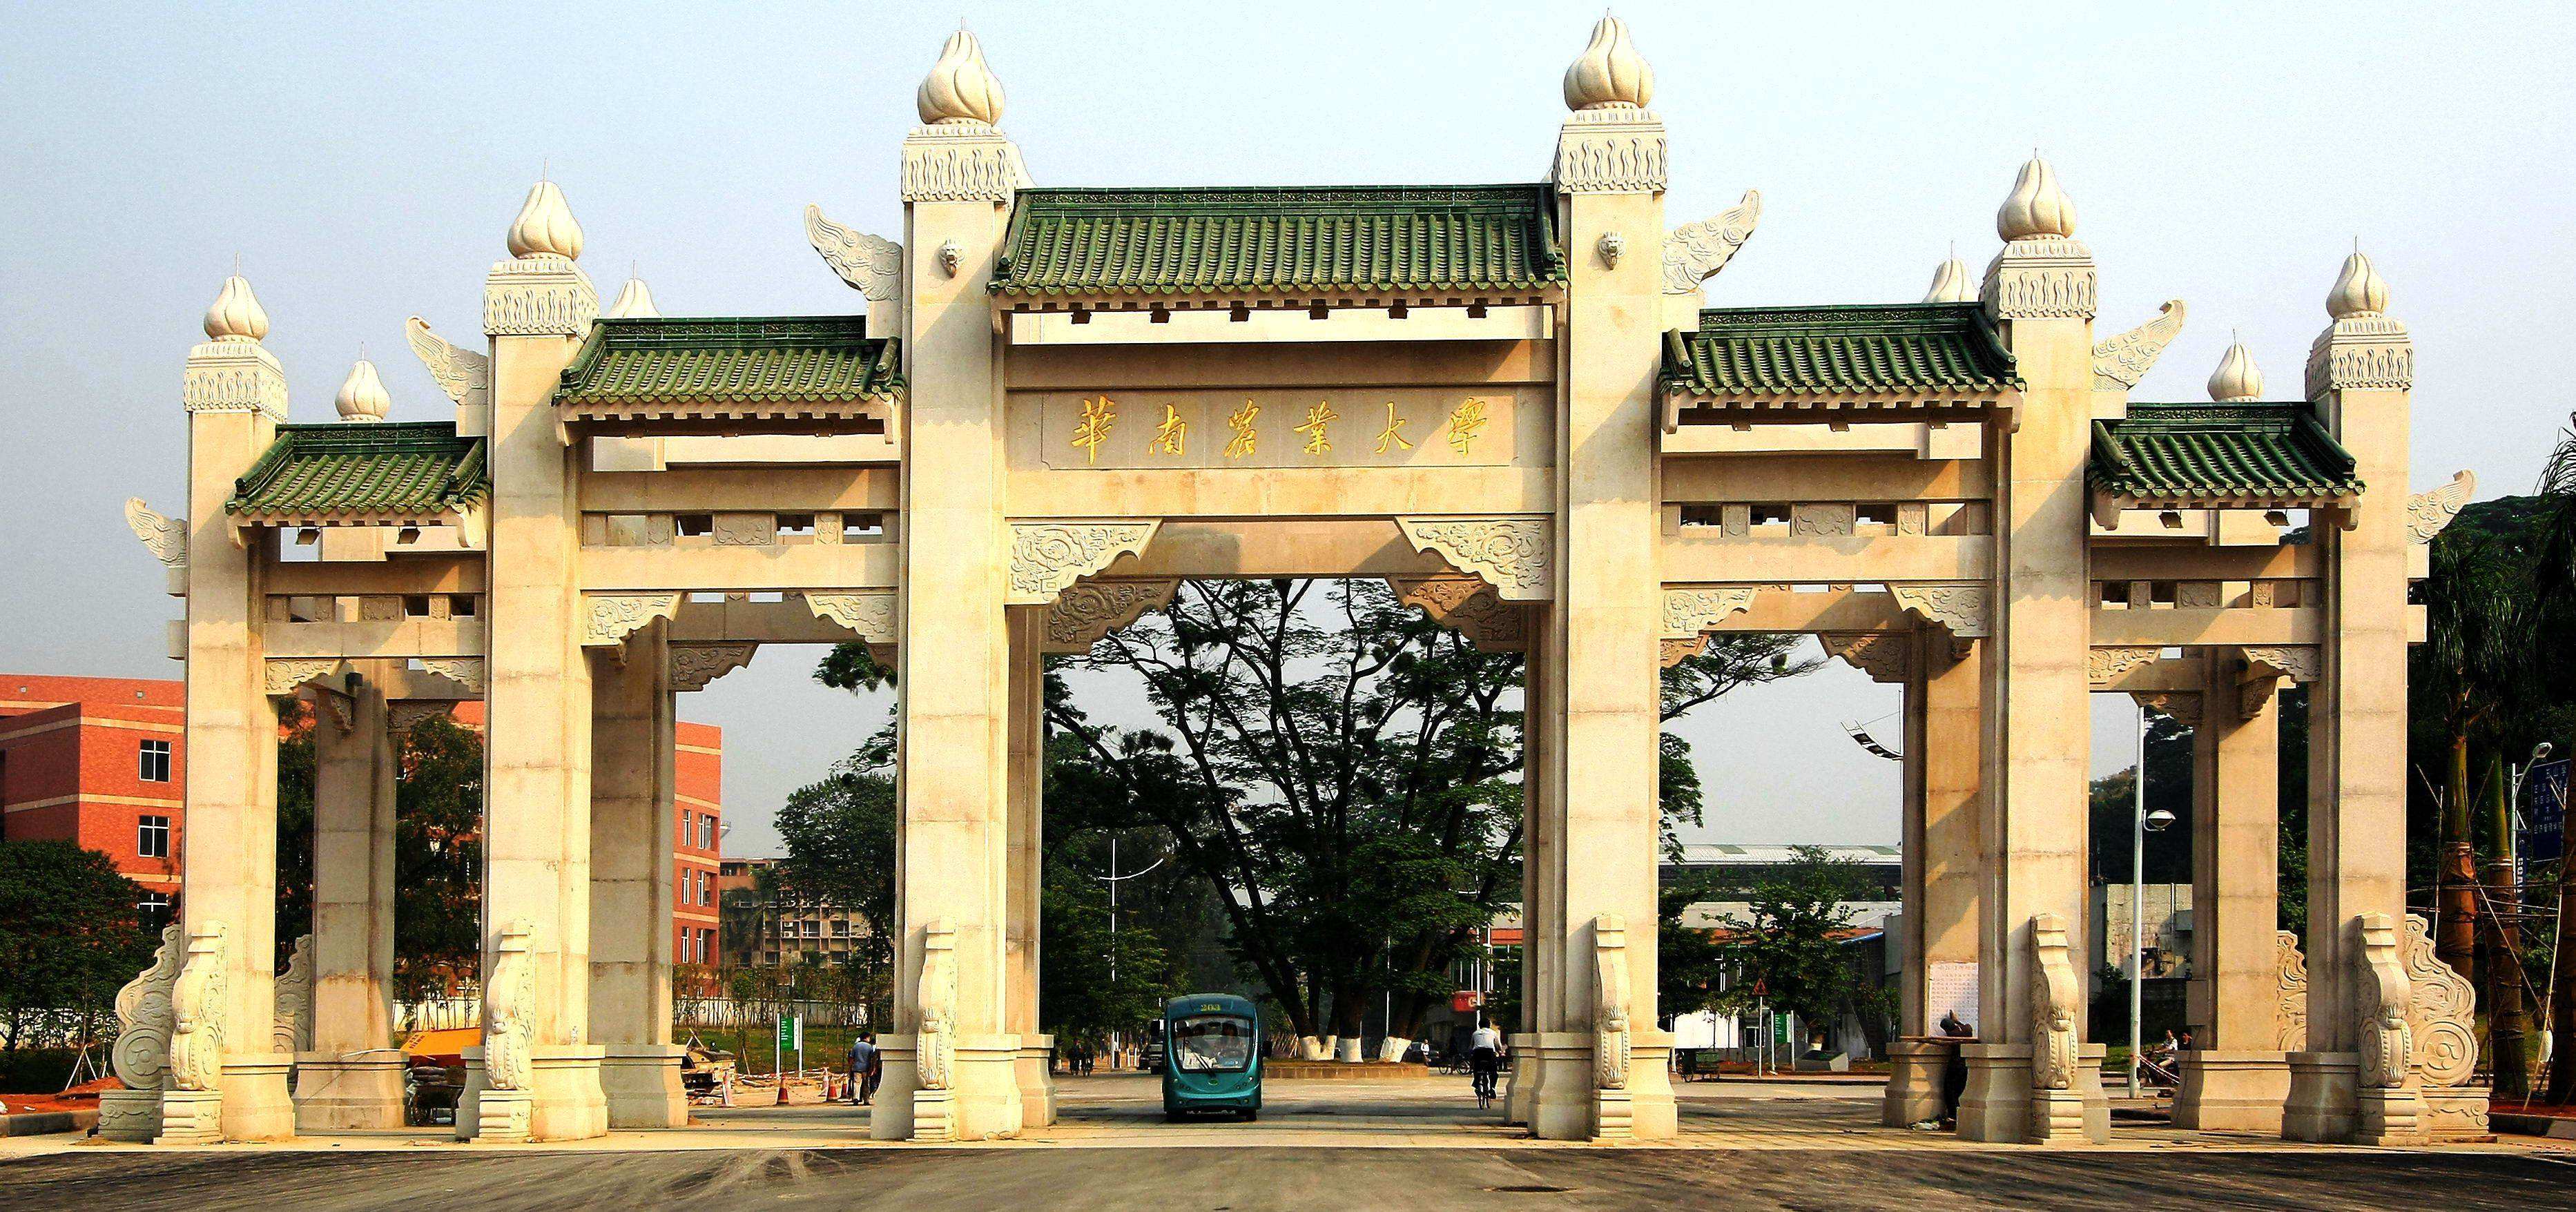 73院校简介:华南农业大学是全国重点大学,广东省和农业部共建的211